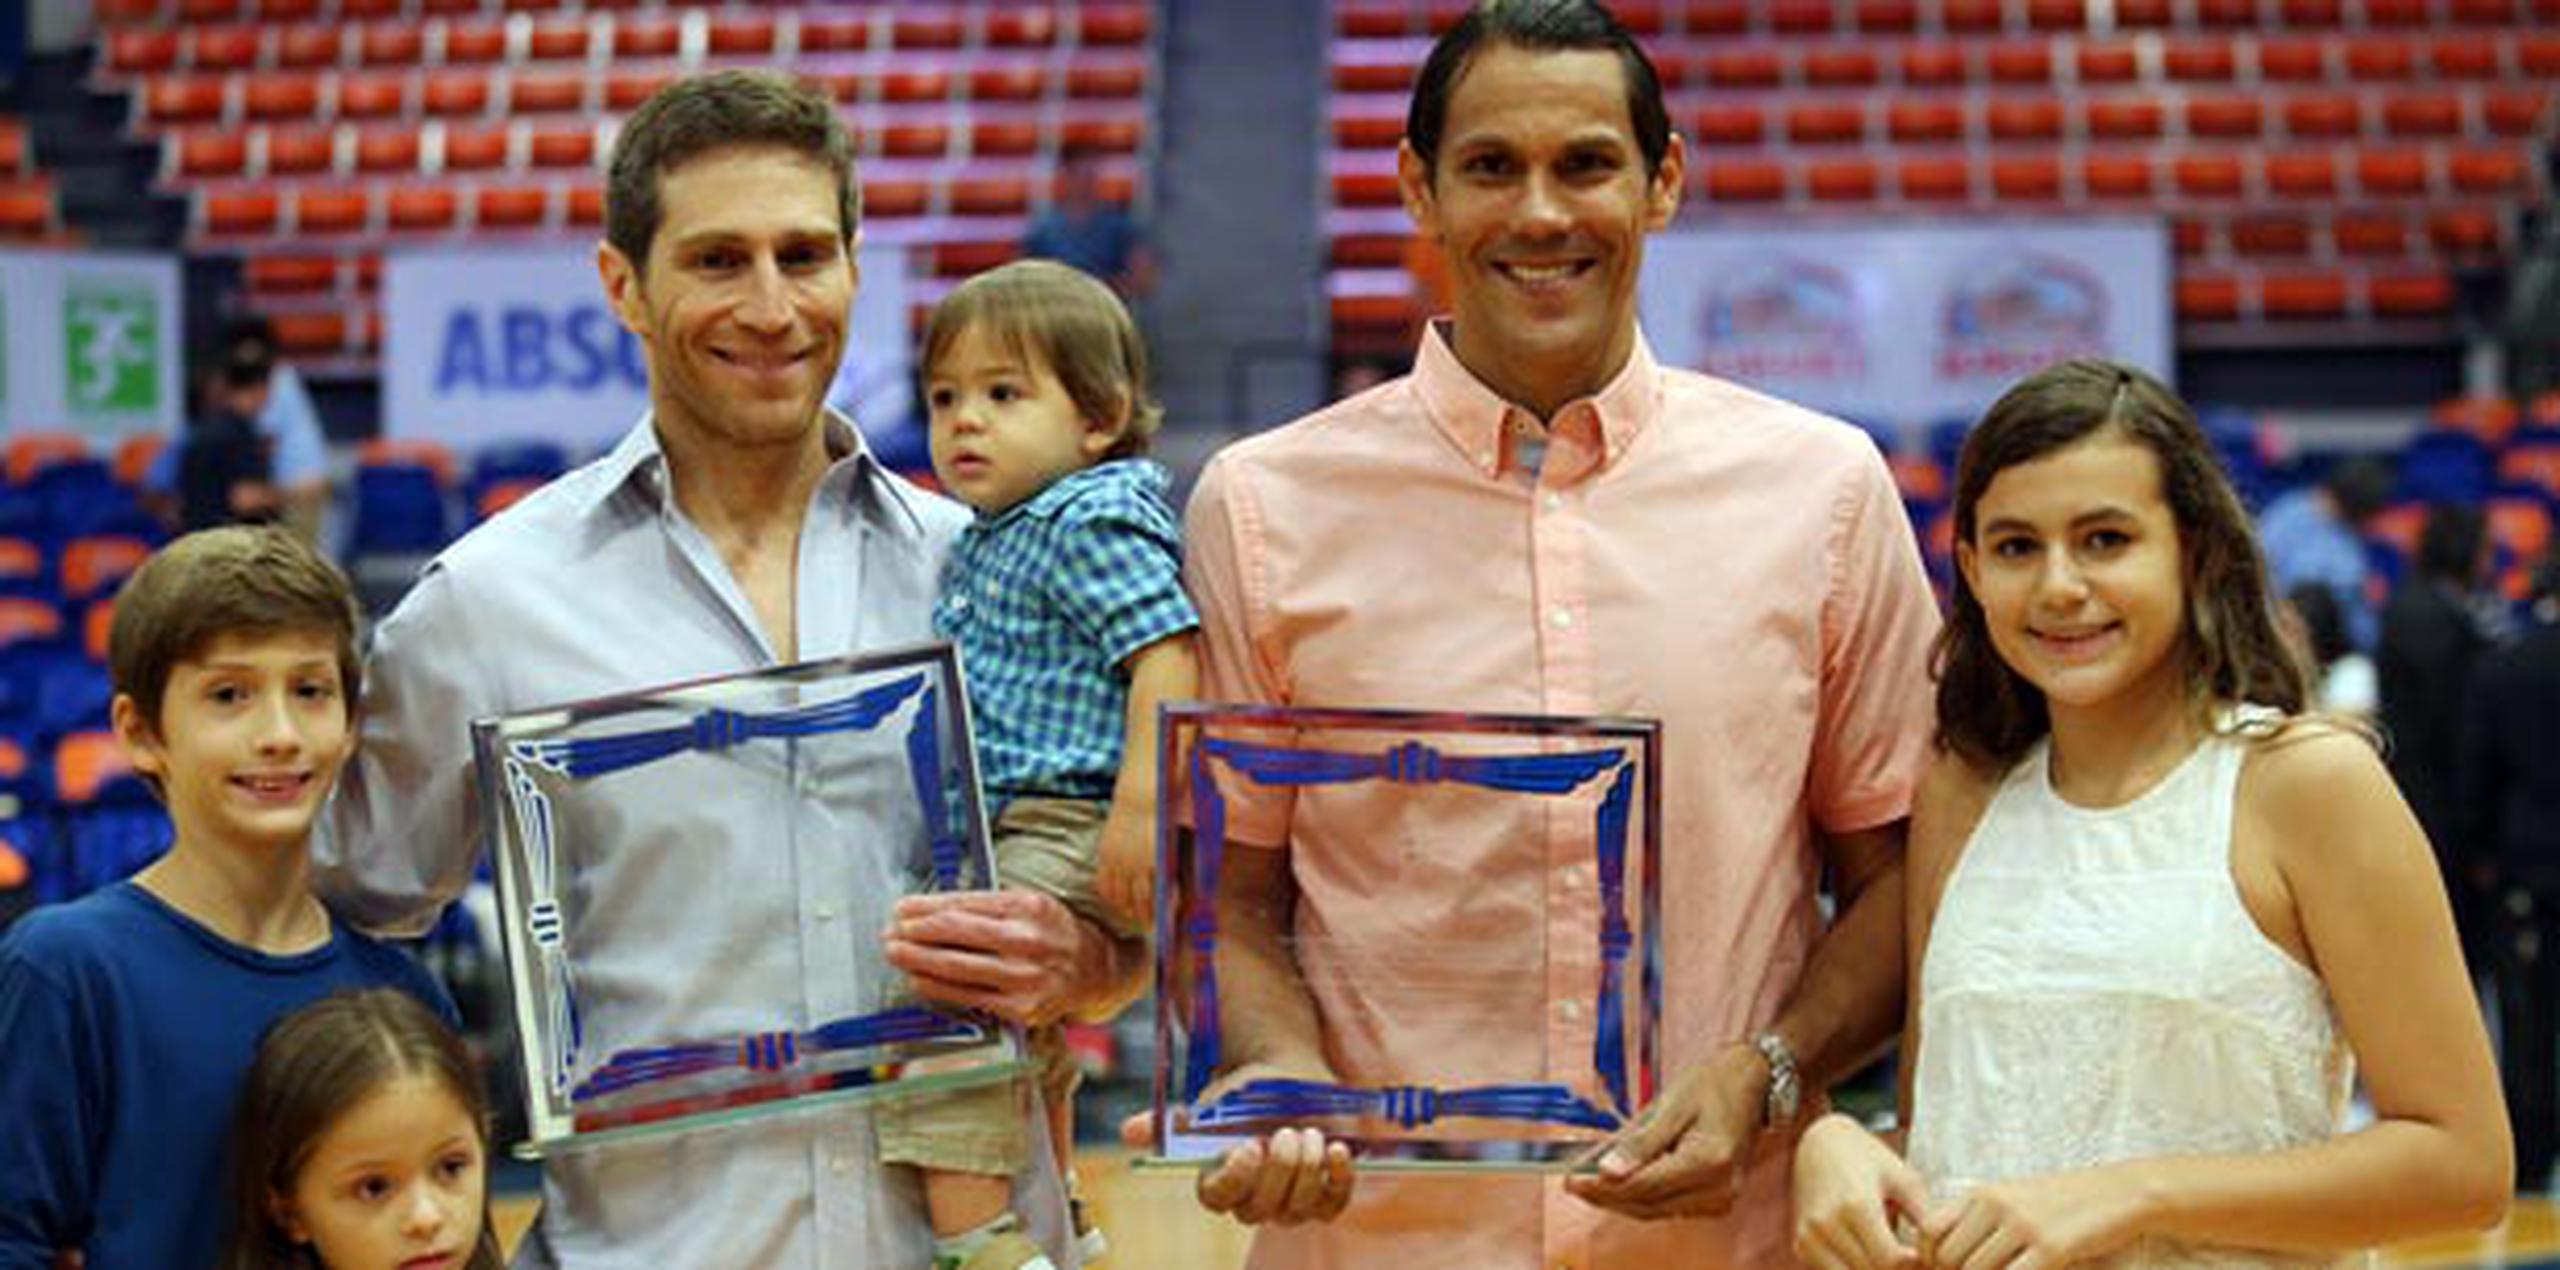 Raúl Papaleo y Ramón ‘Monchito’ Hernández fueron reconocidos por la Federación Puertorriqueña de Voleibol. (juan.martinez@gfrmedia.com)